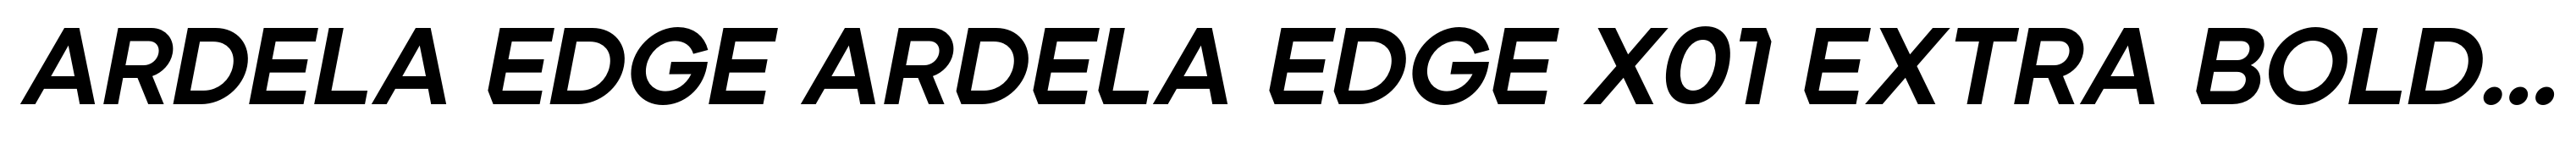 Ardela Edge ARDELA EDGE X01 Extra Bold Italic